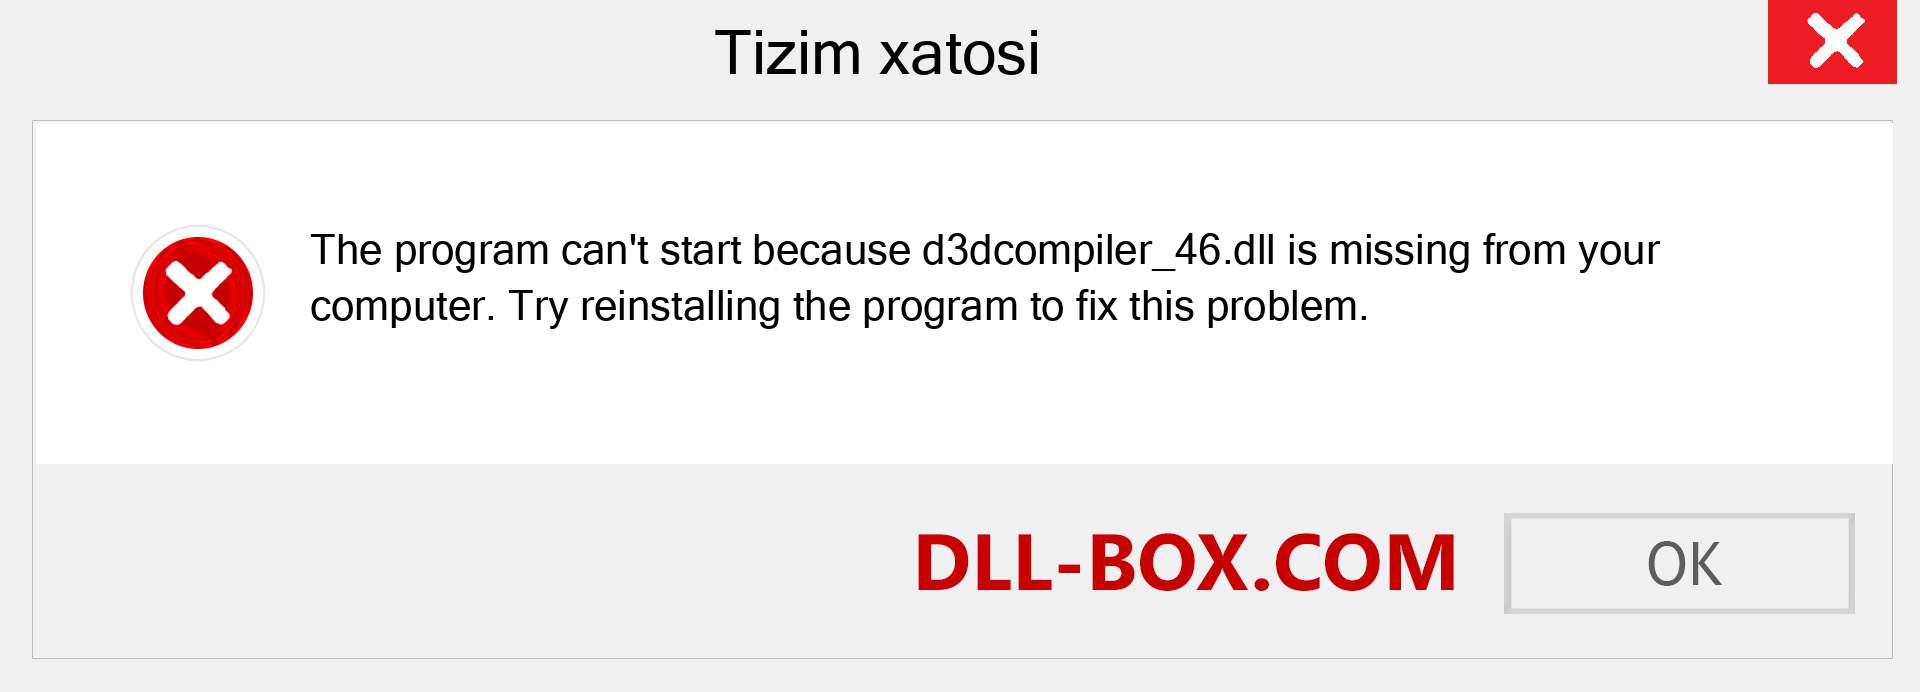 d3dcompiler_46.dll fayli yo'qolganmi?. Windows 7, 8, 10 uchun yuklab olish - Windowsda d3dcompiler_46 dll etishmayotgan xatoni tuzating, rasmlar, rasmlar